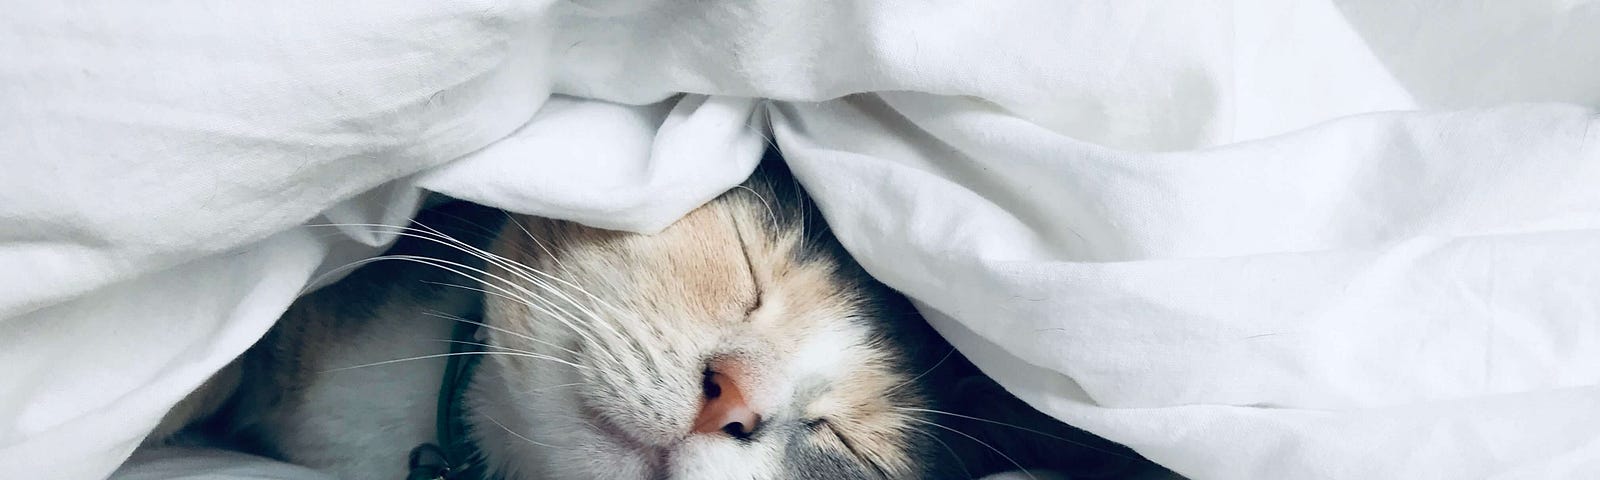 Chat dormant sous la couette